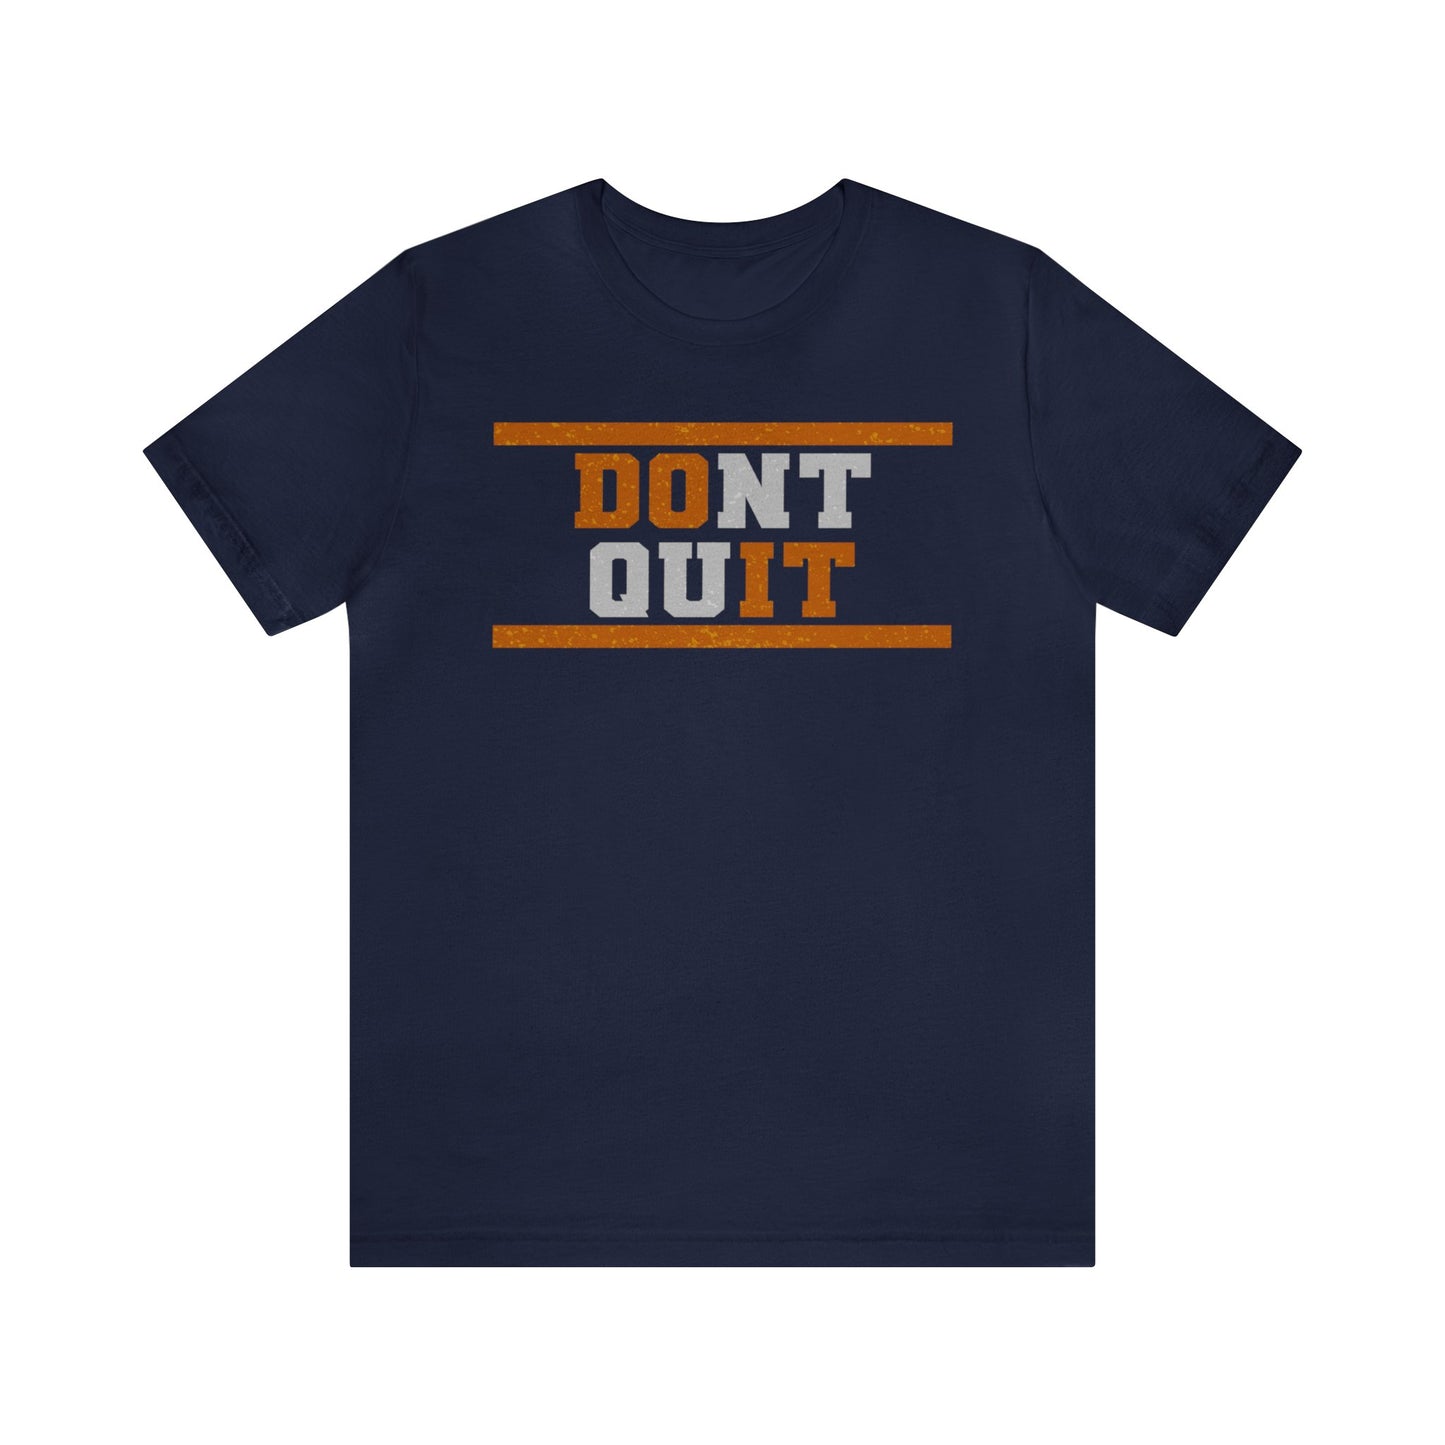 Don't Quit, Do It - T-shirt